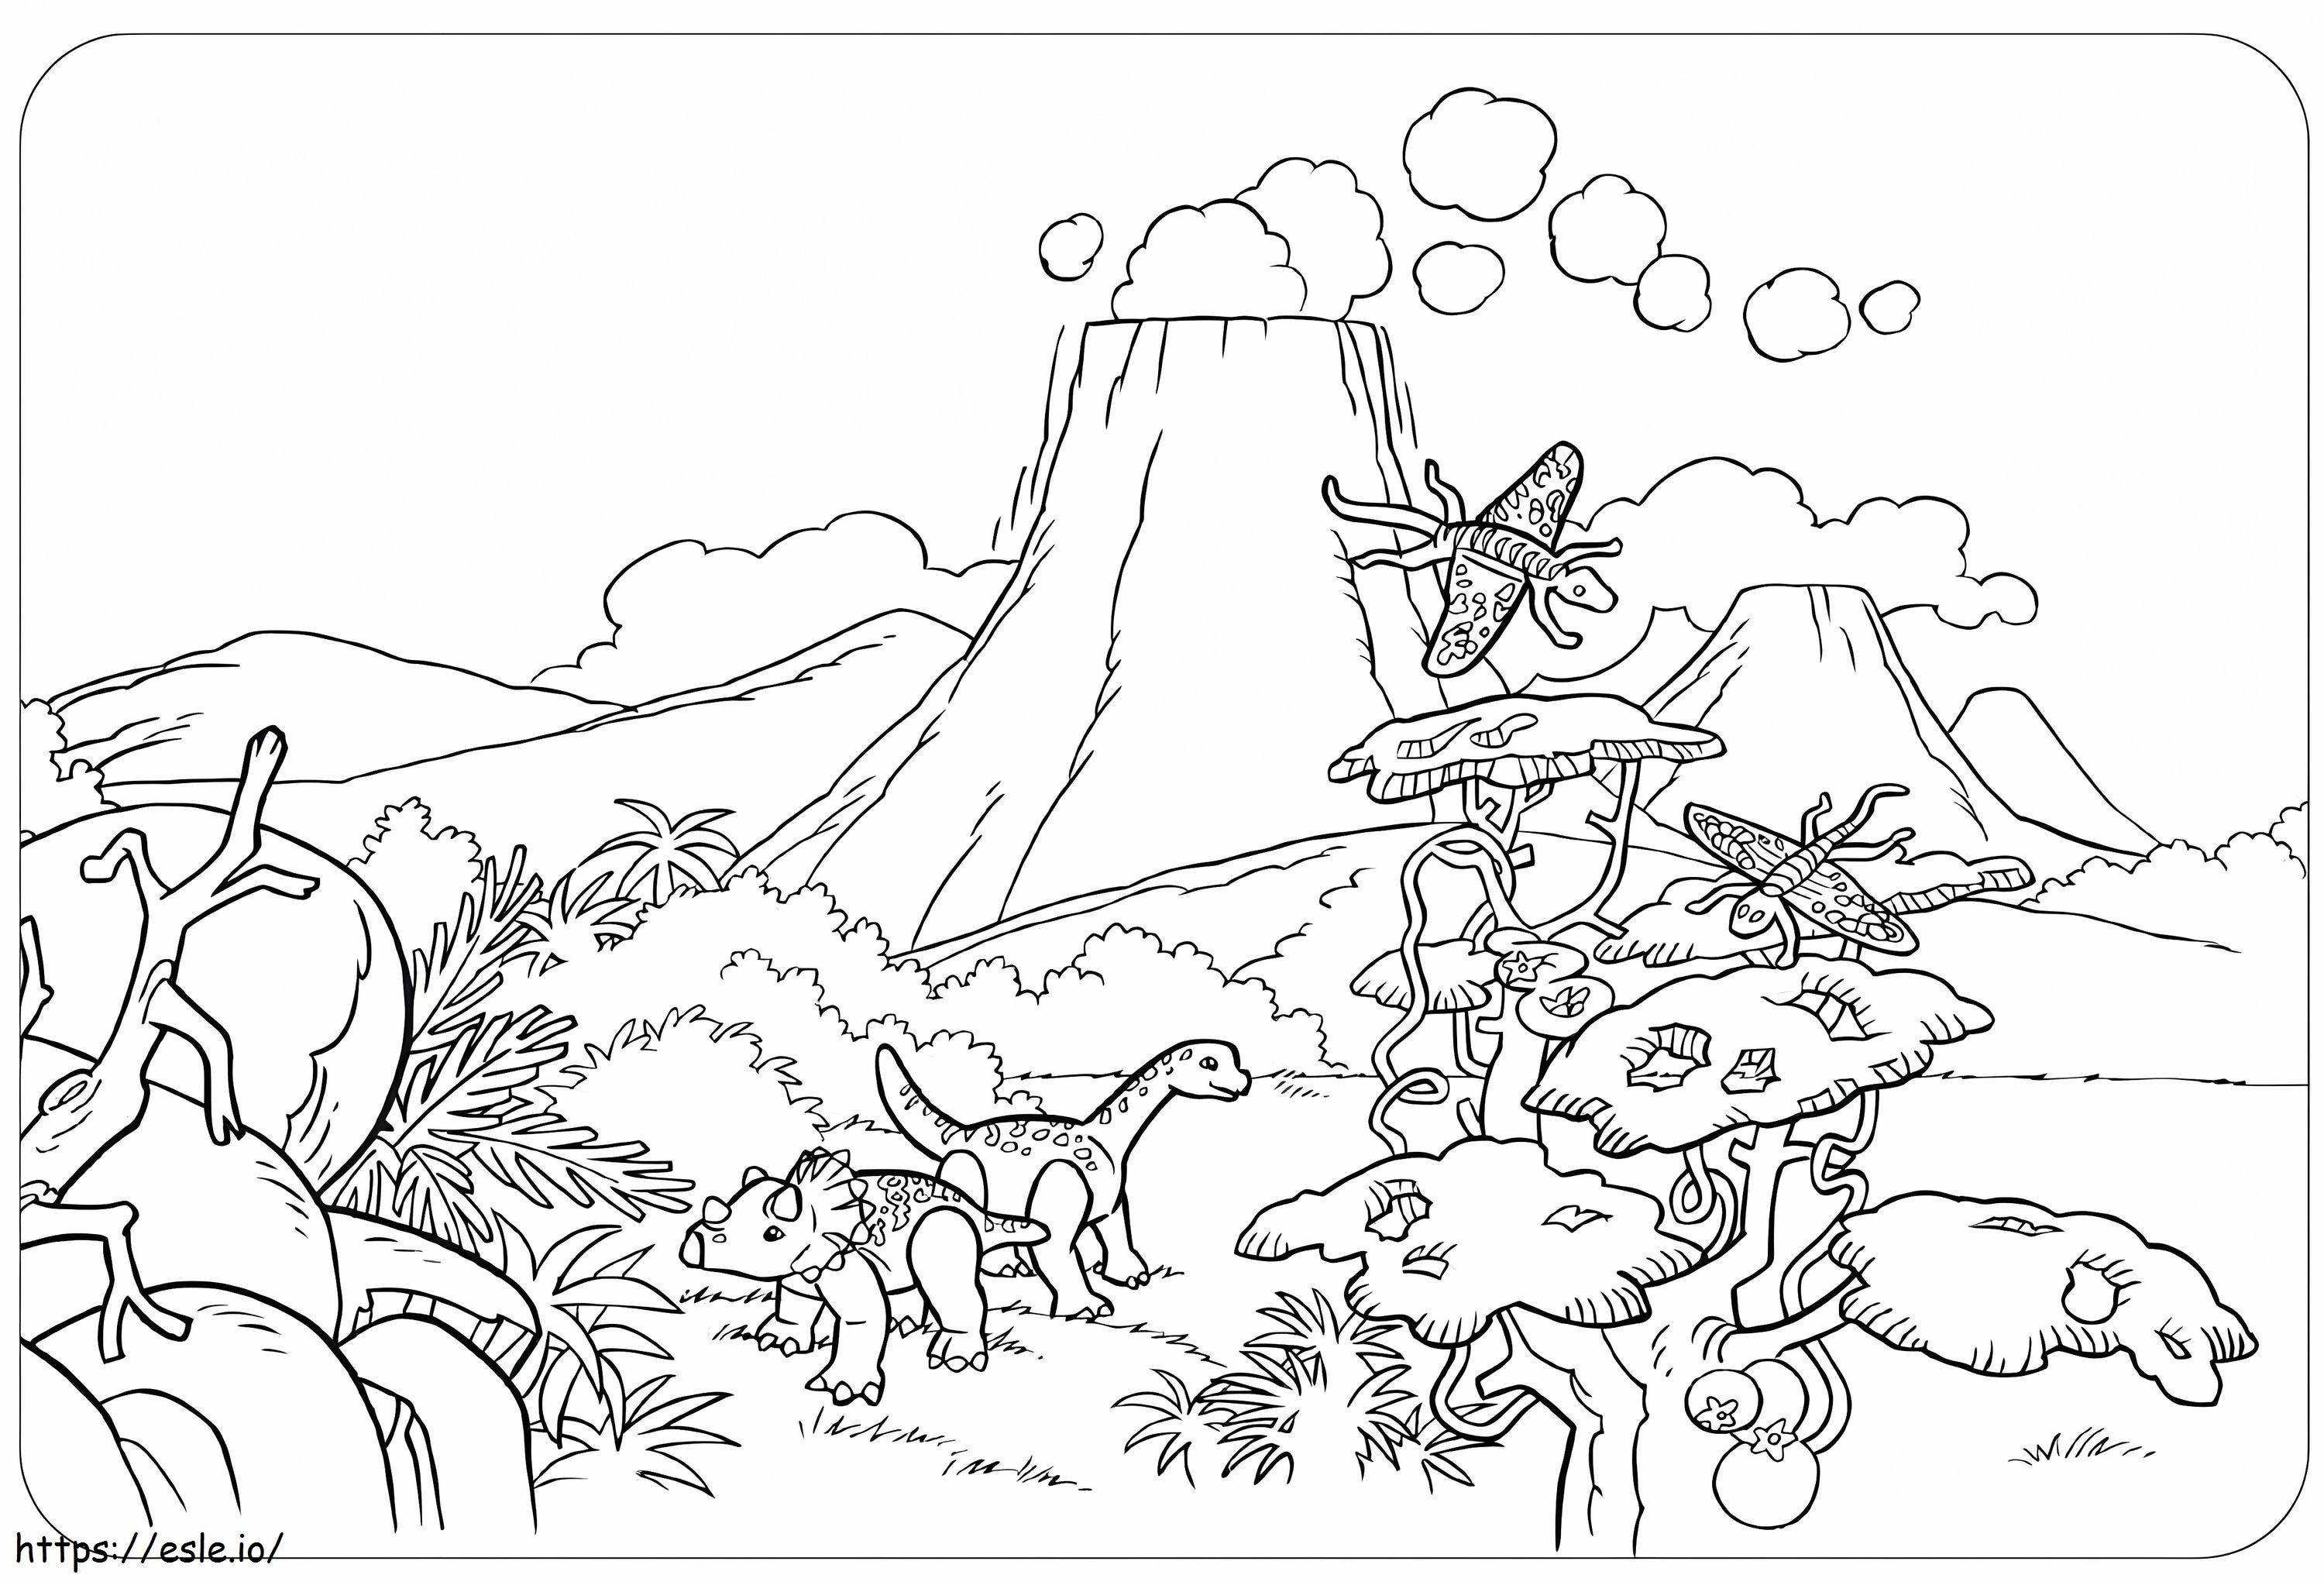 Dinossauros Playmobil para colorir